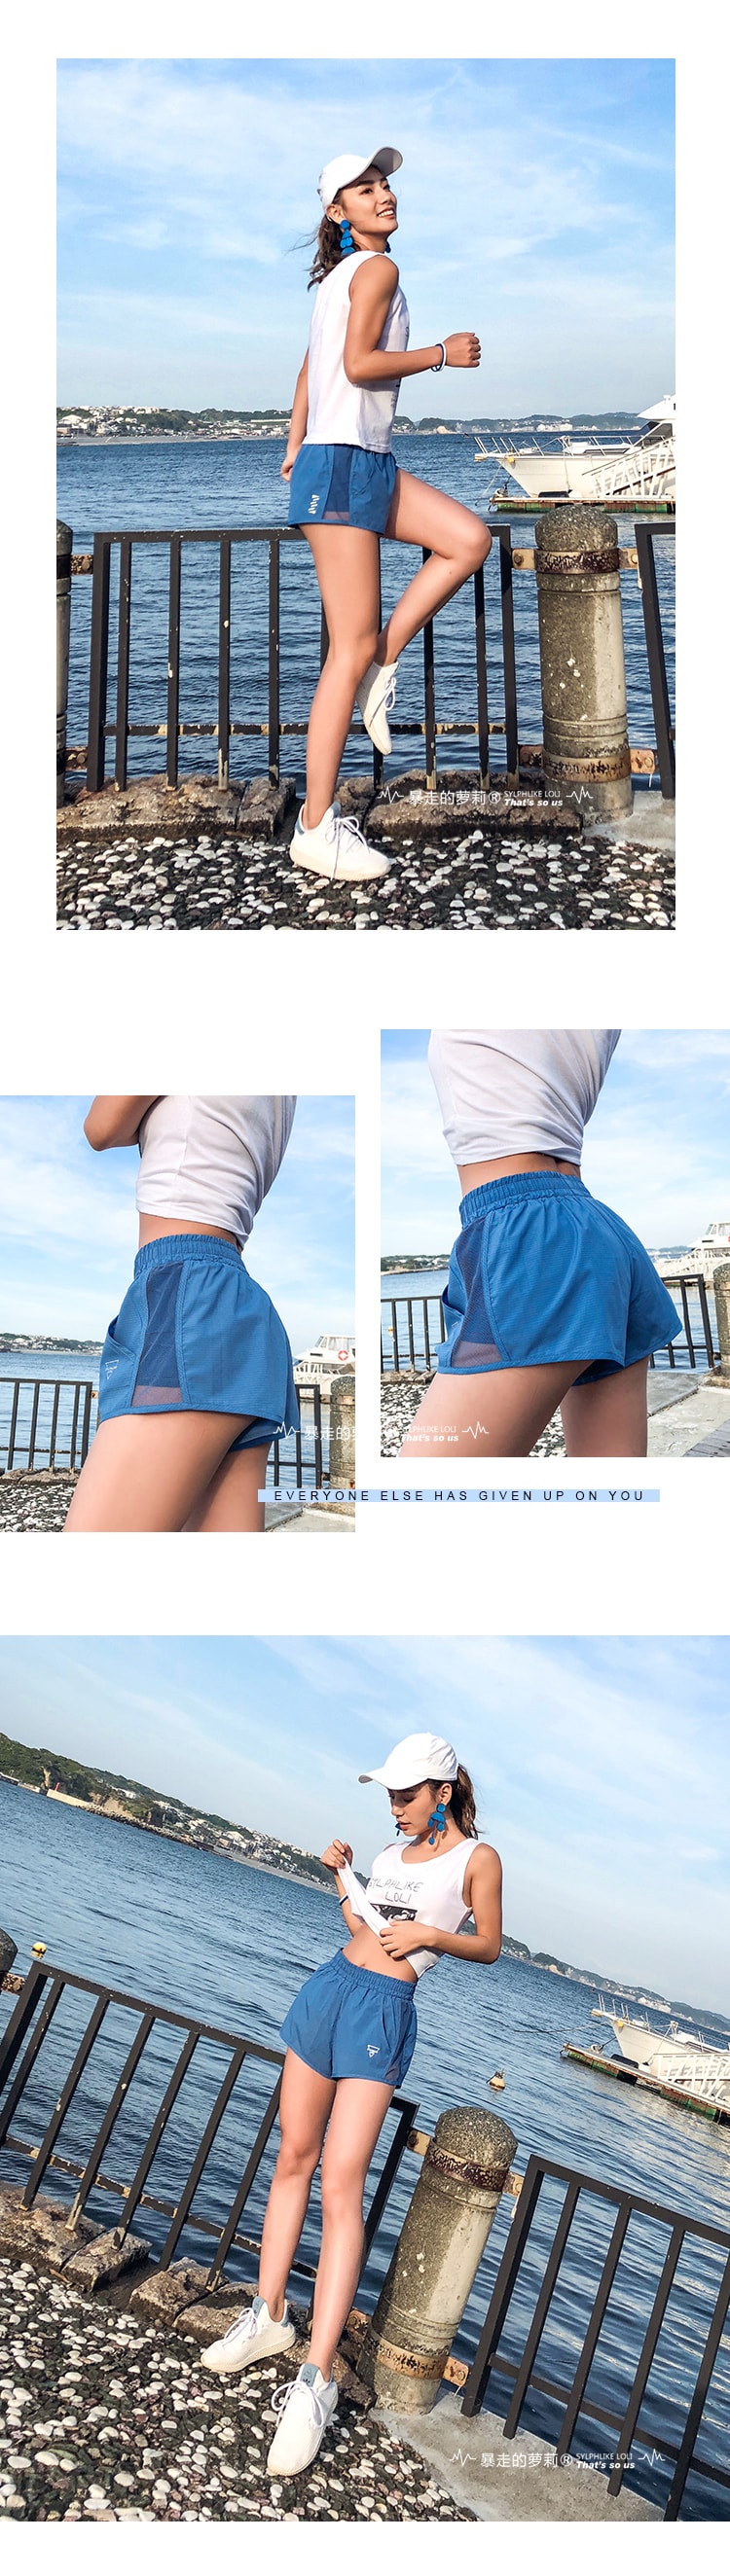 Sports High waist Shorts For Running Outdoor/Blue#/XS